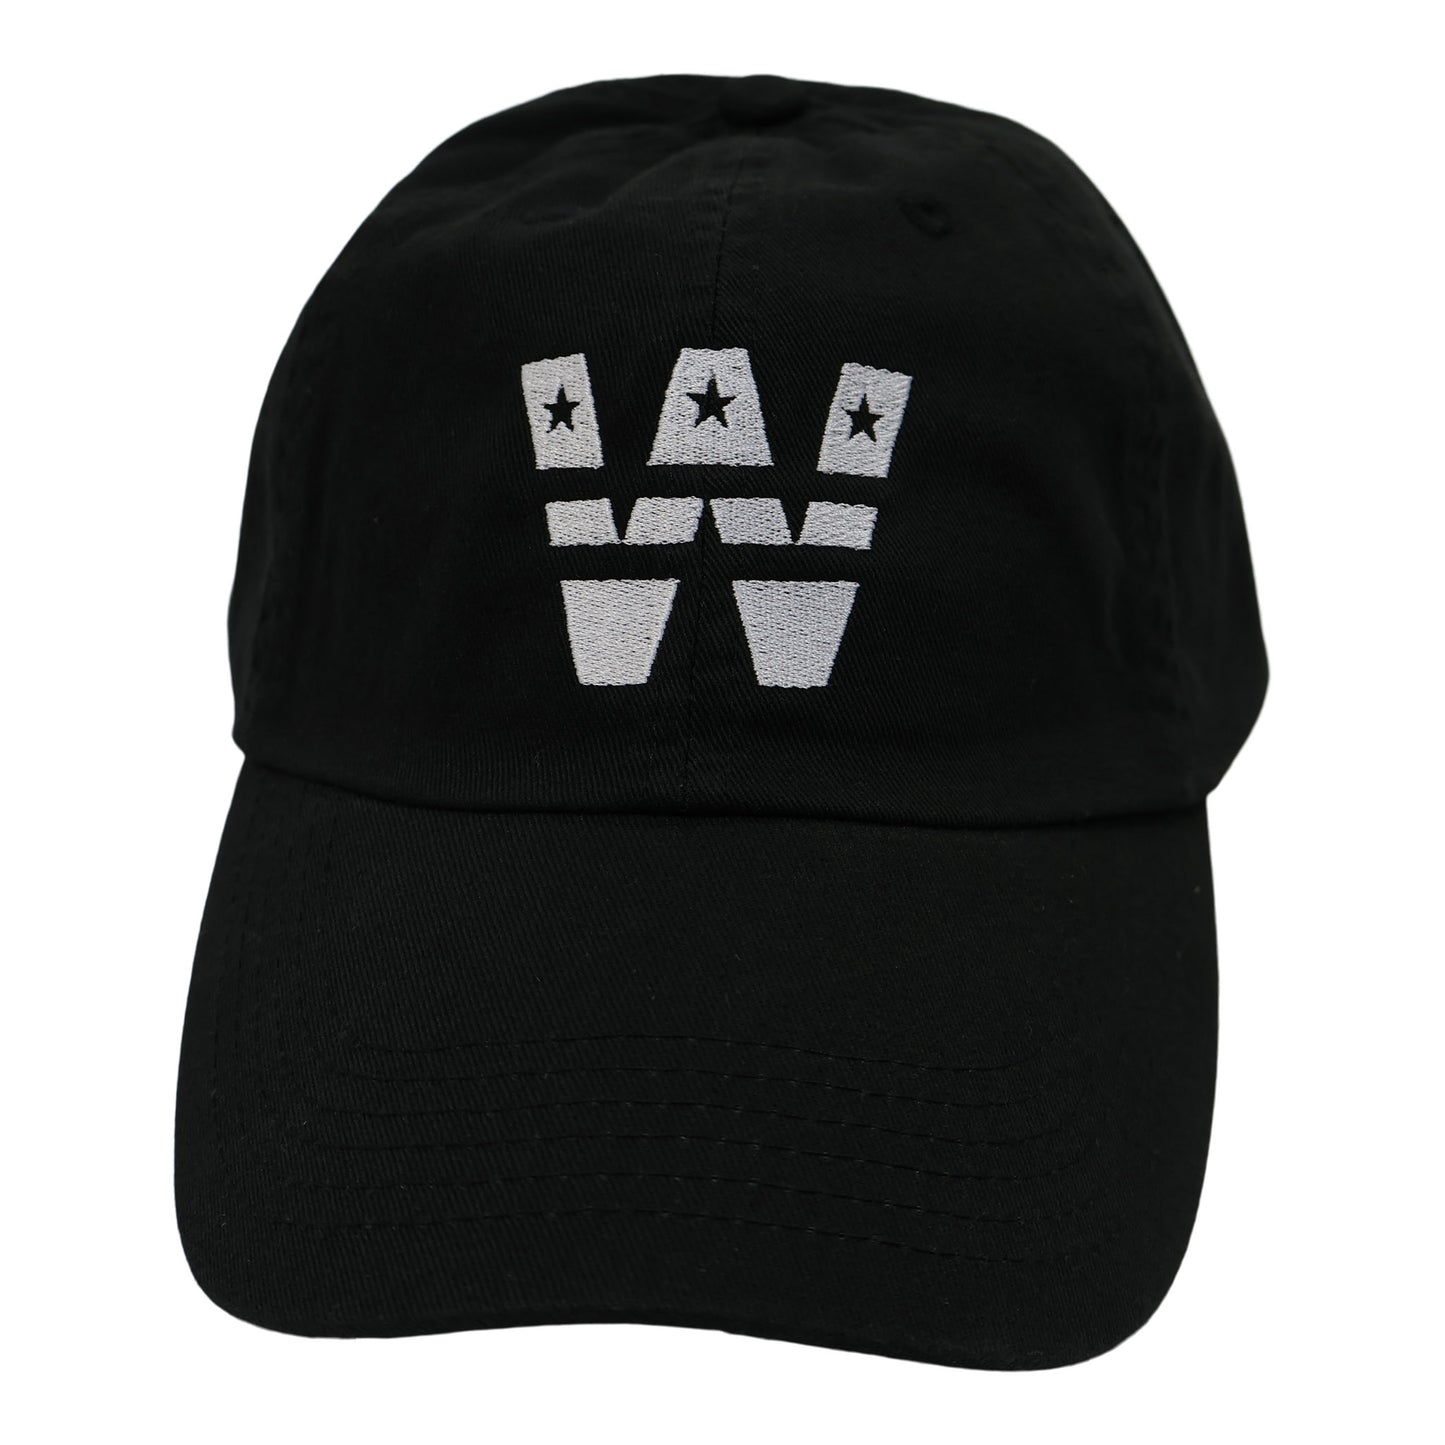 "W Stars" Classic Dad hat